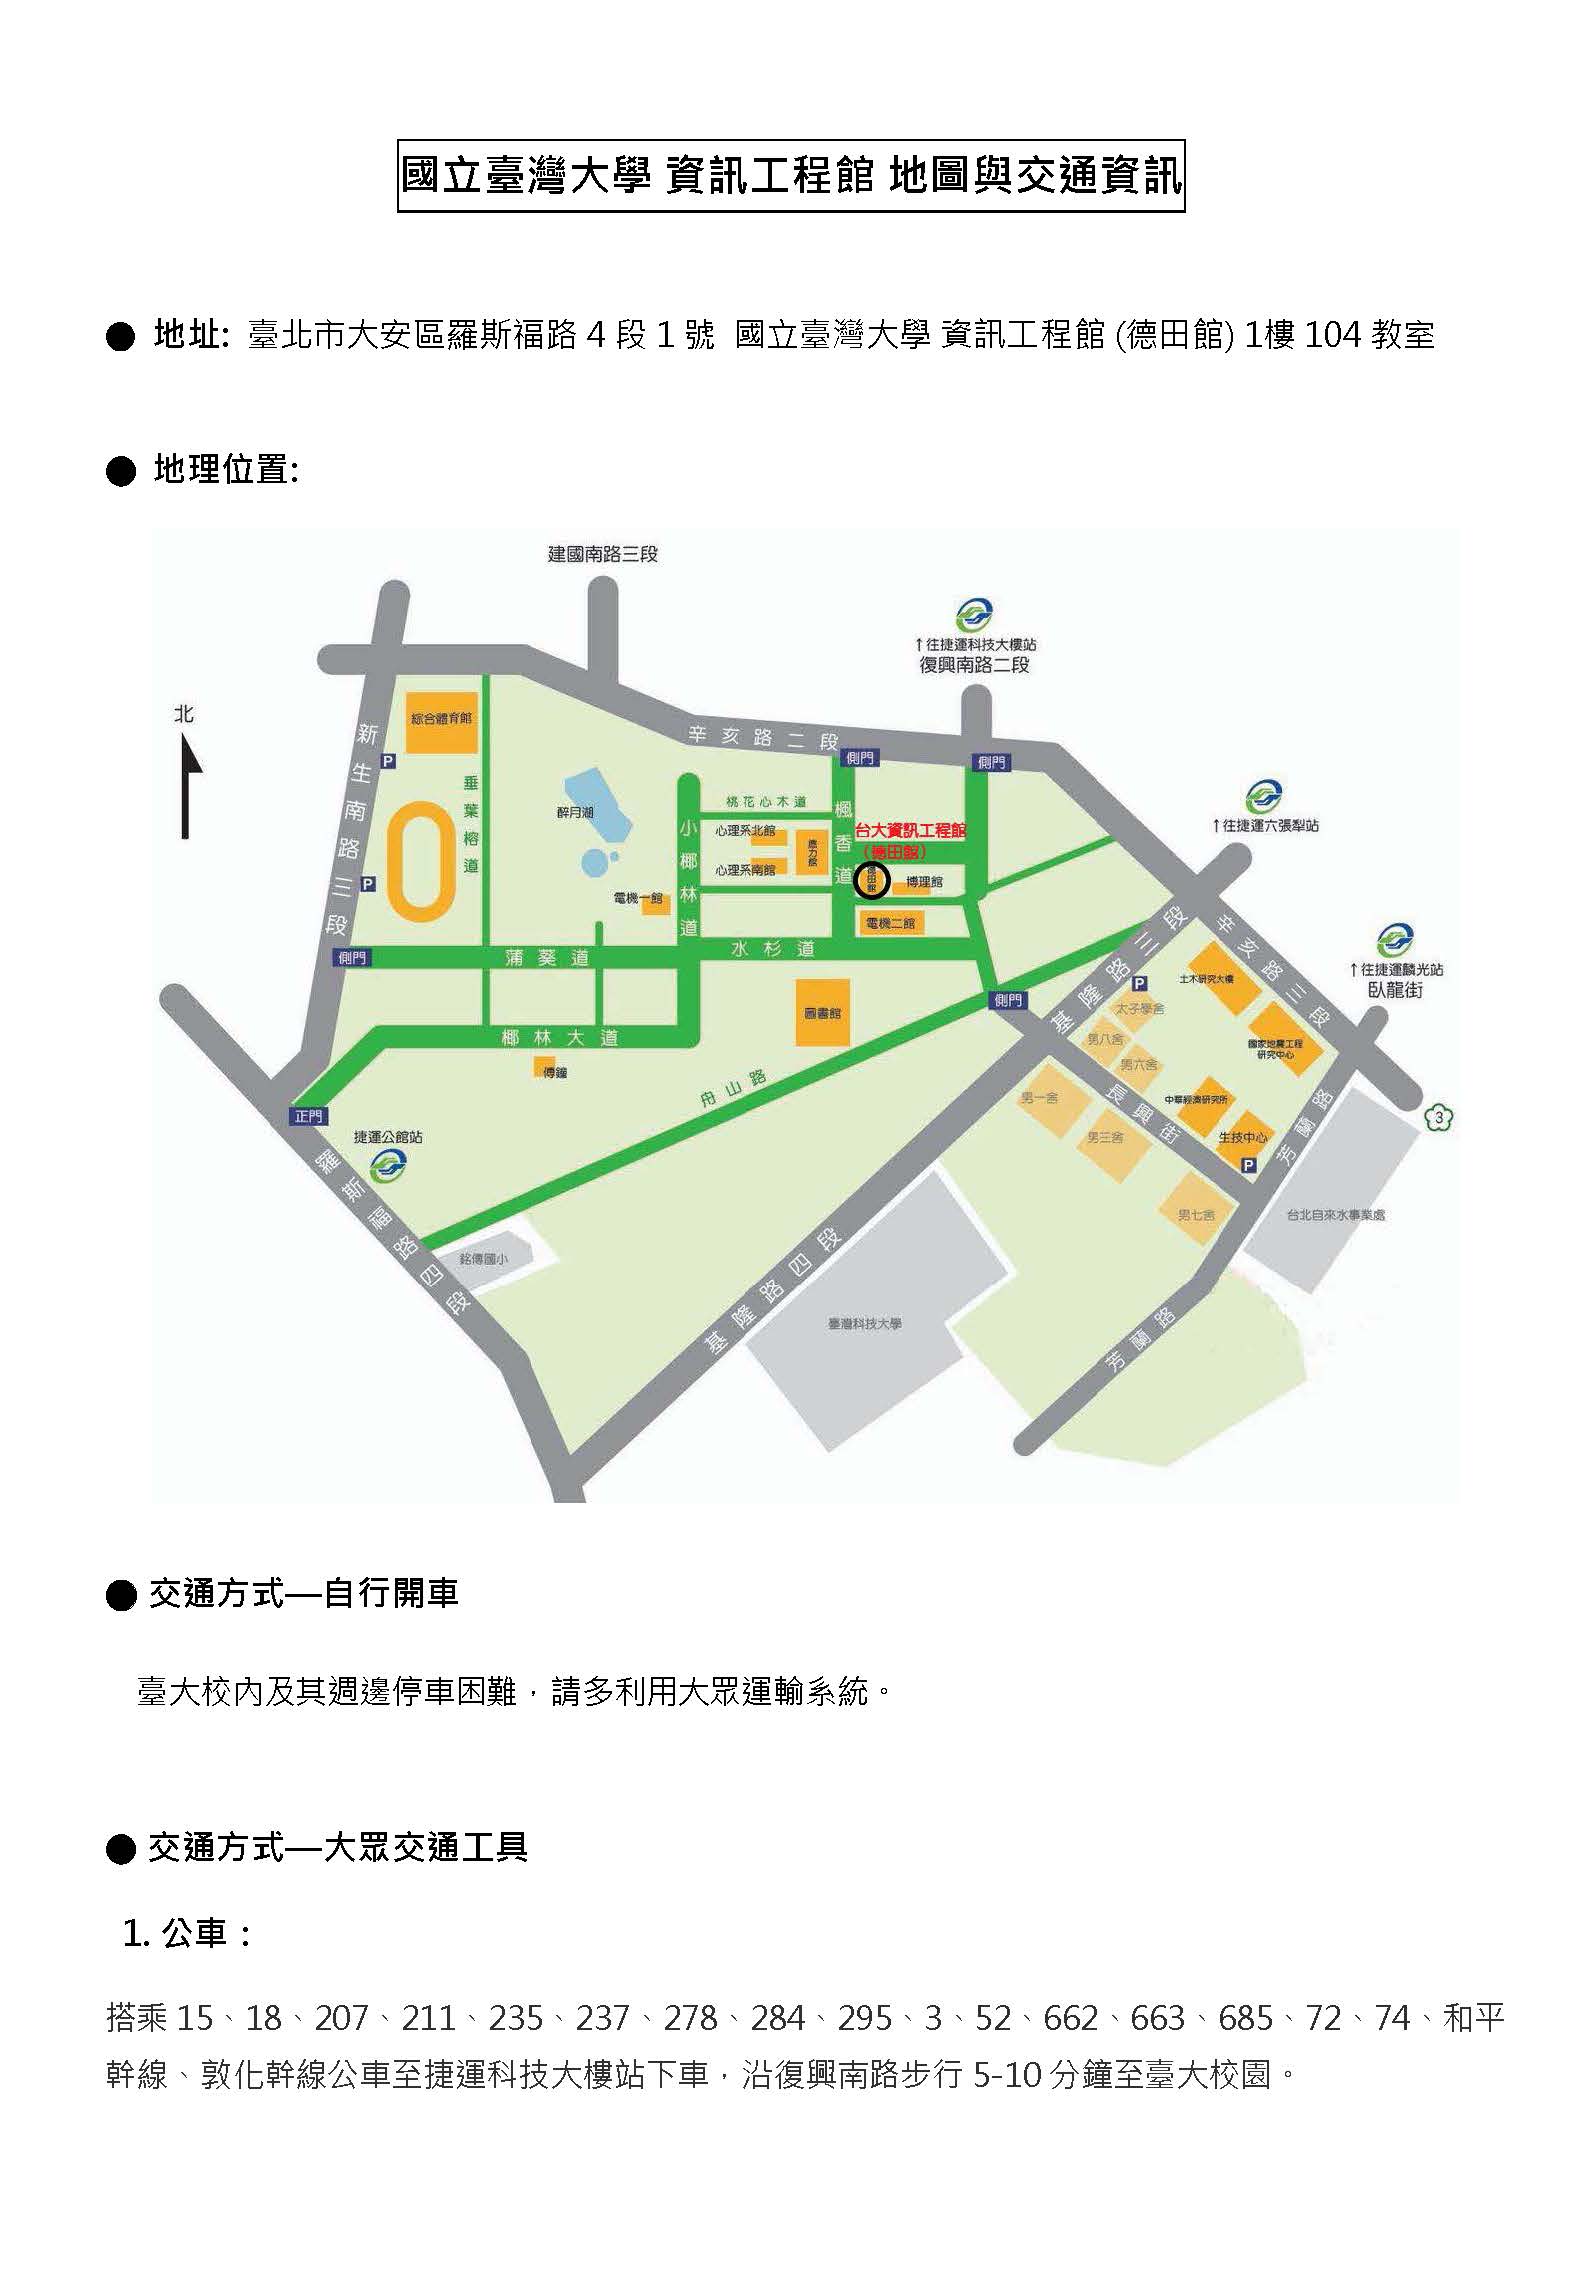 台灣大學資訊工程館地圖資訊